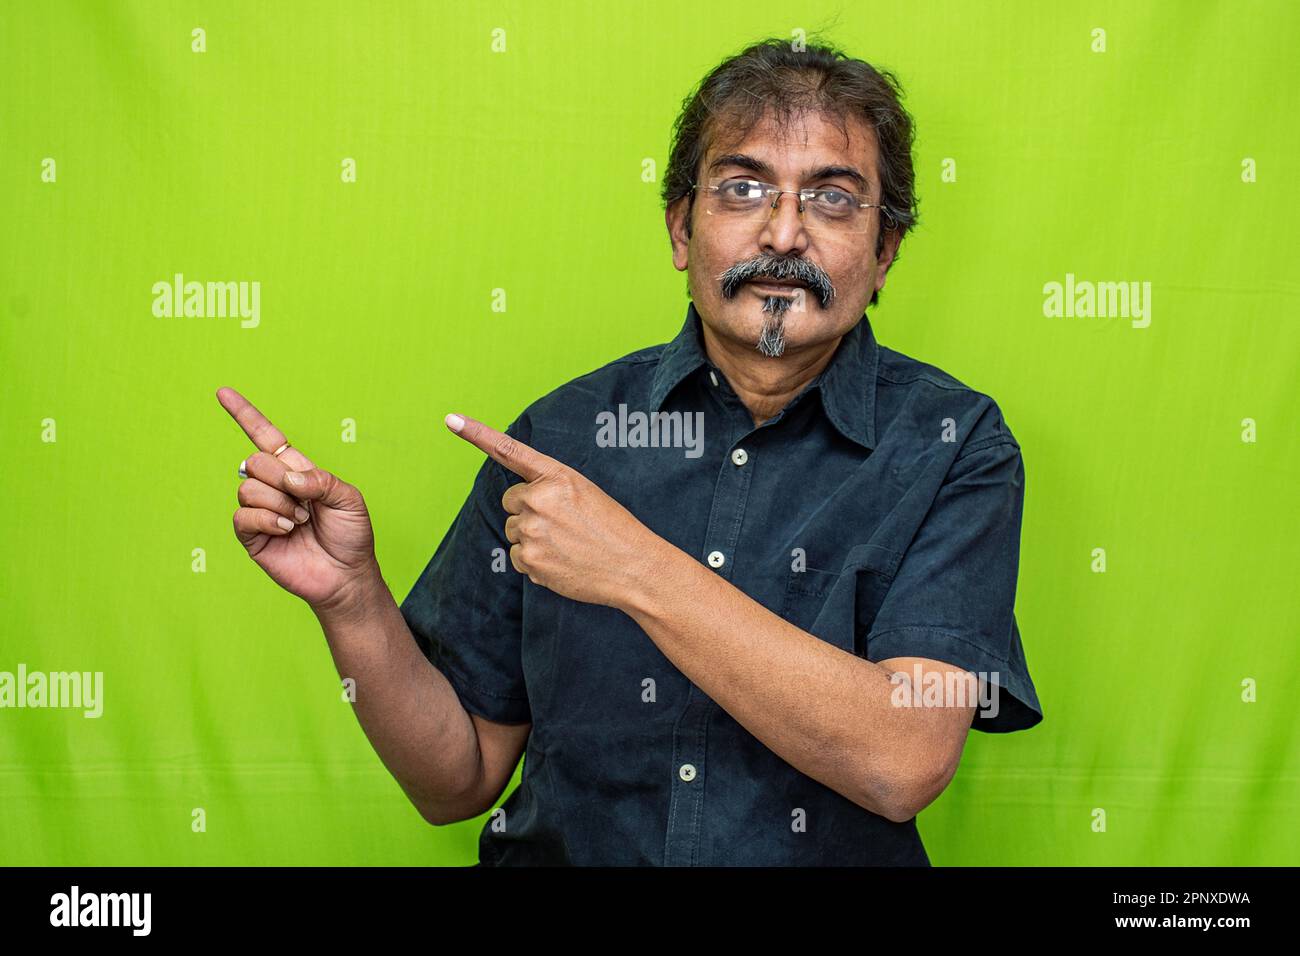 Der kluge Geschäftsmann in schwarzem Hemd und Brille zeigt mit beiden Zeigefingern die richtige Richtung an und steht vor einem grünen Hintergrund Stockfoto